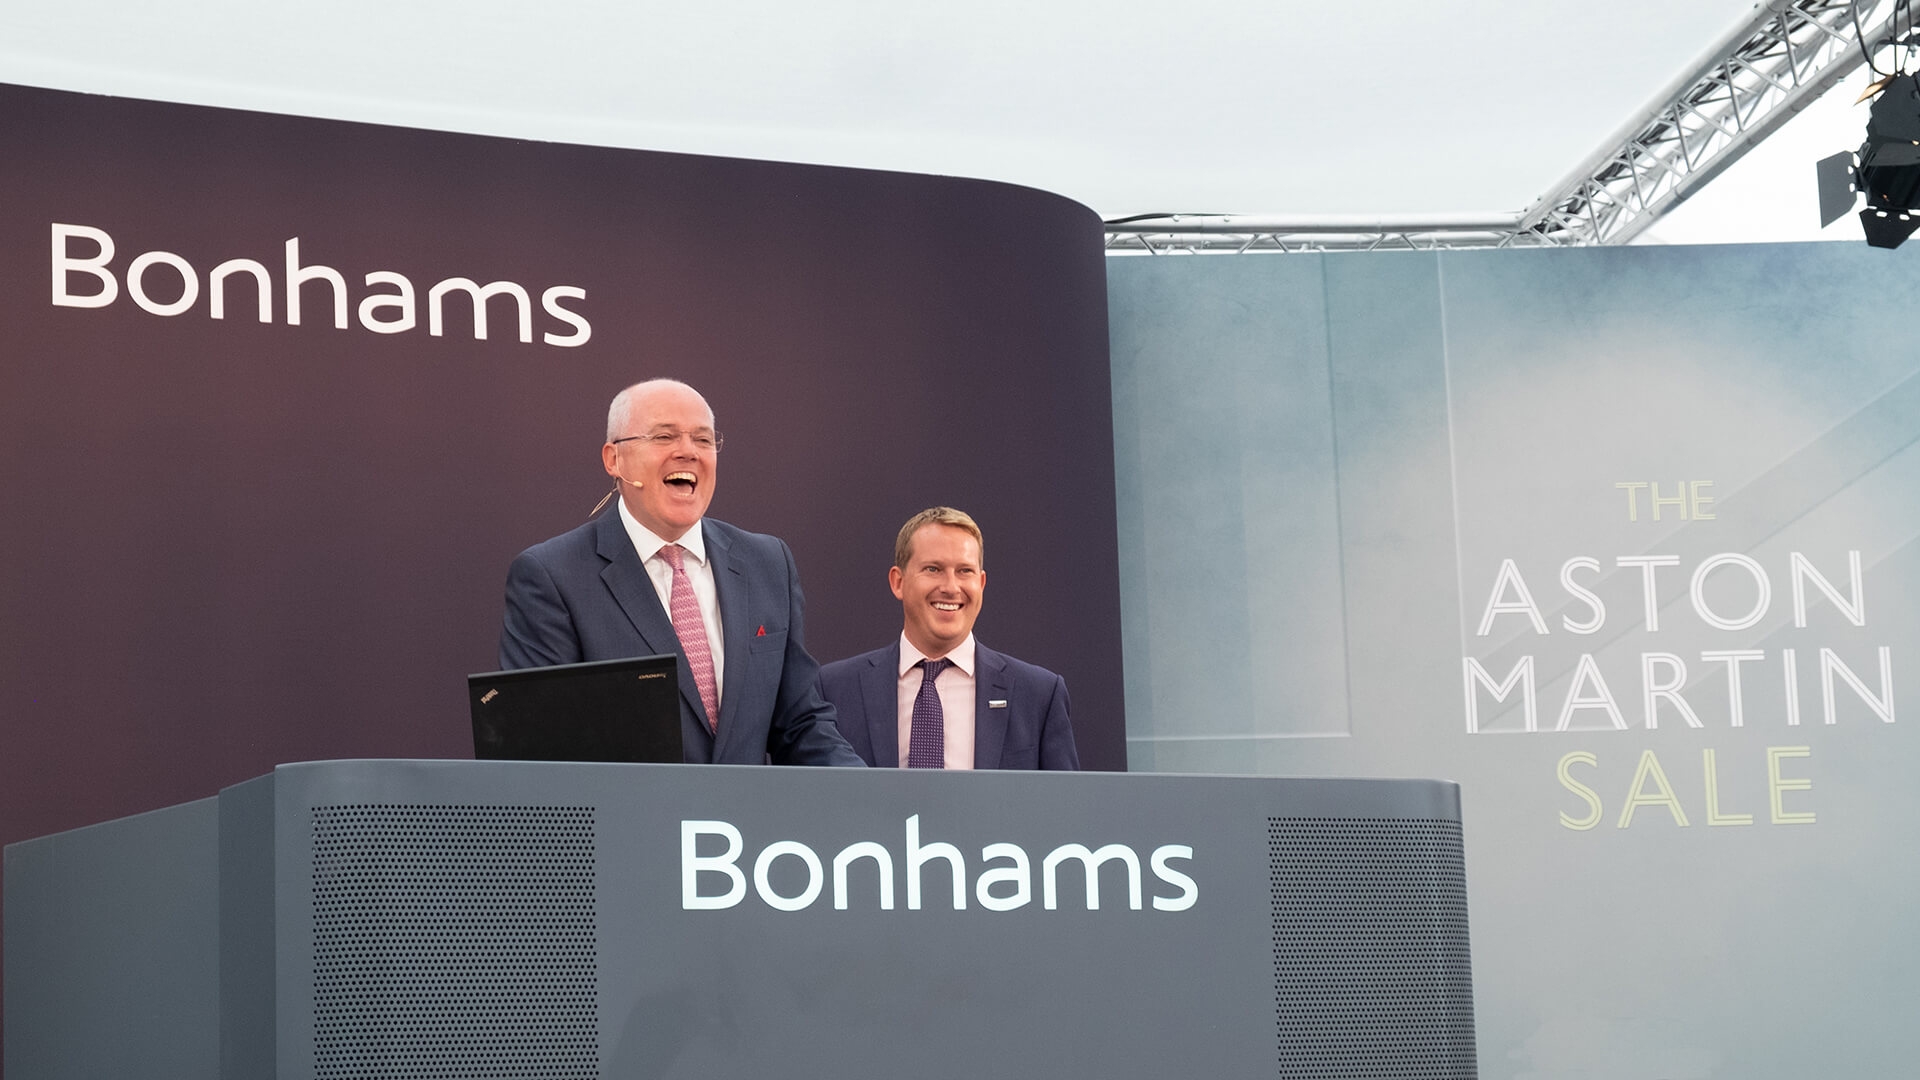 Bonhams’ £4.4m 2018 Aston Martin Sale